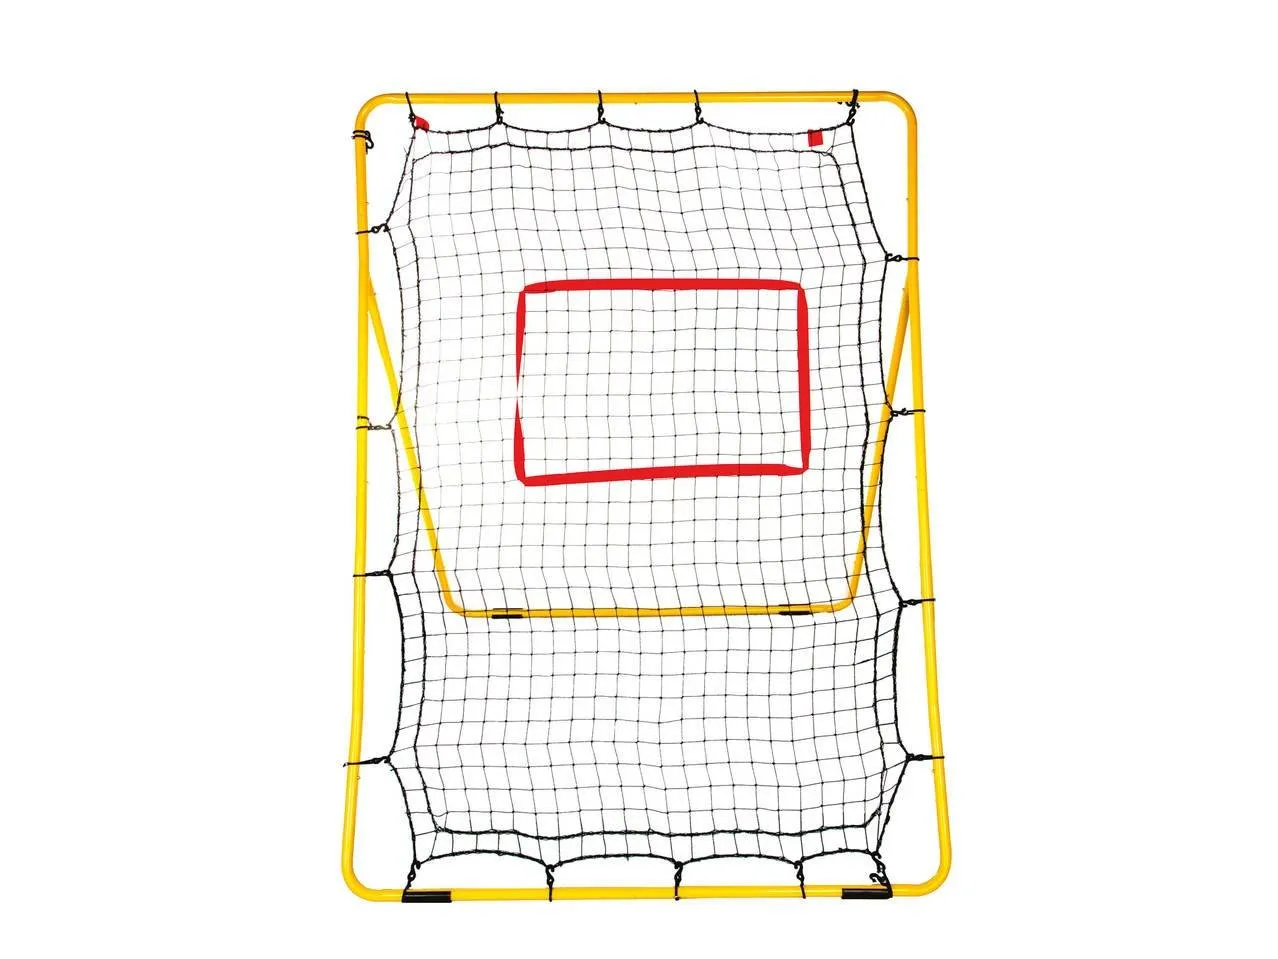 Hurling Rebounder Skill Net